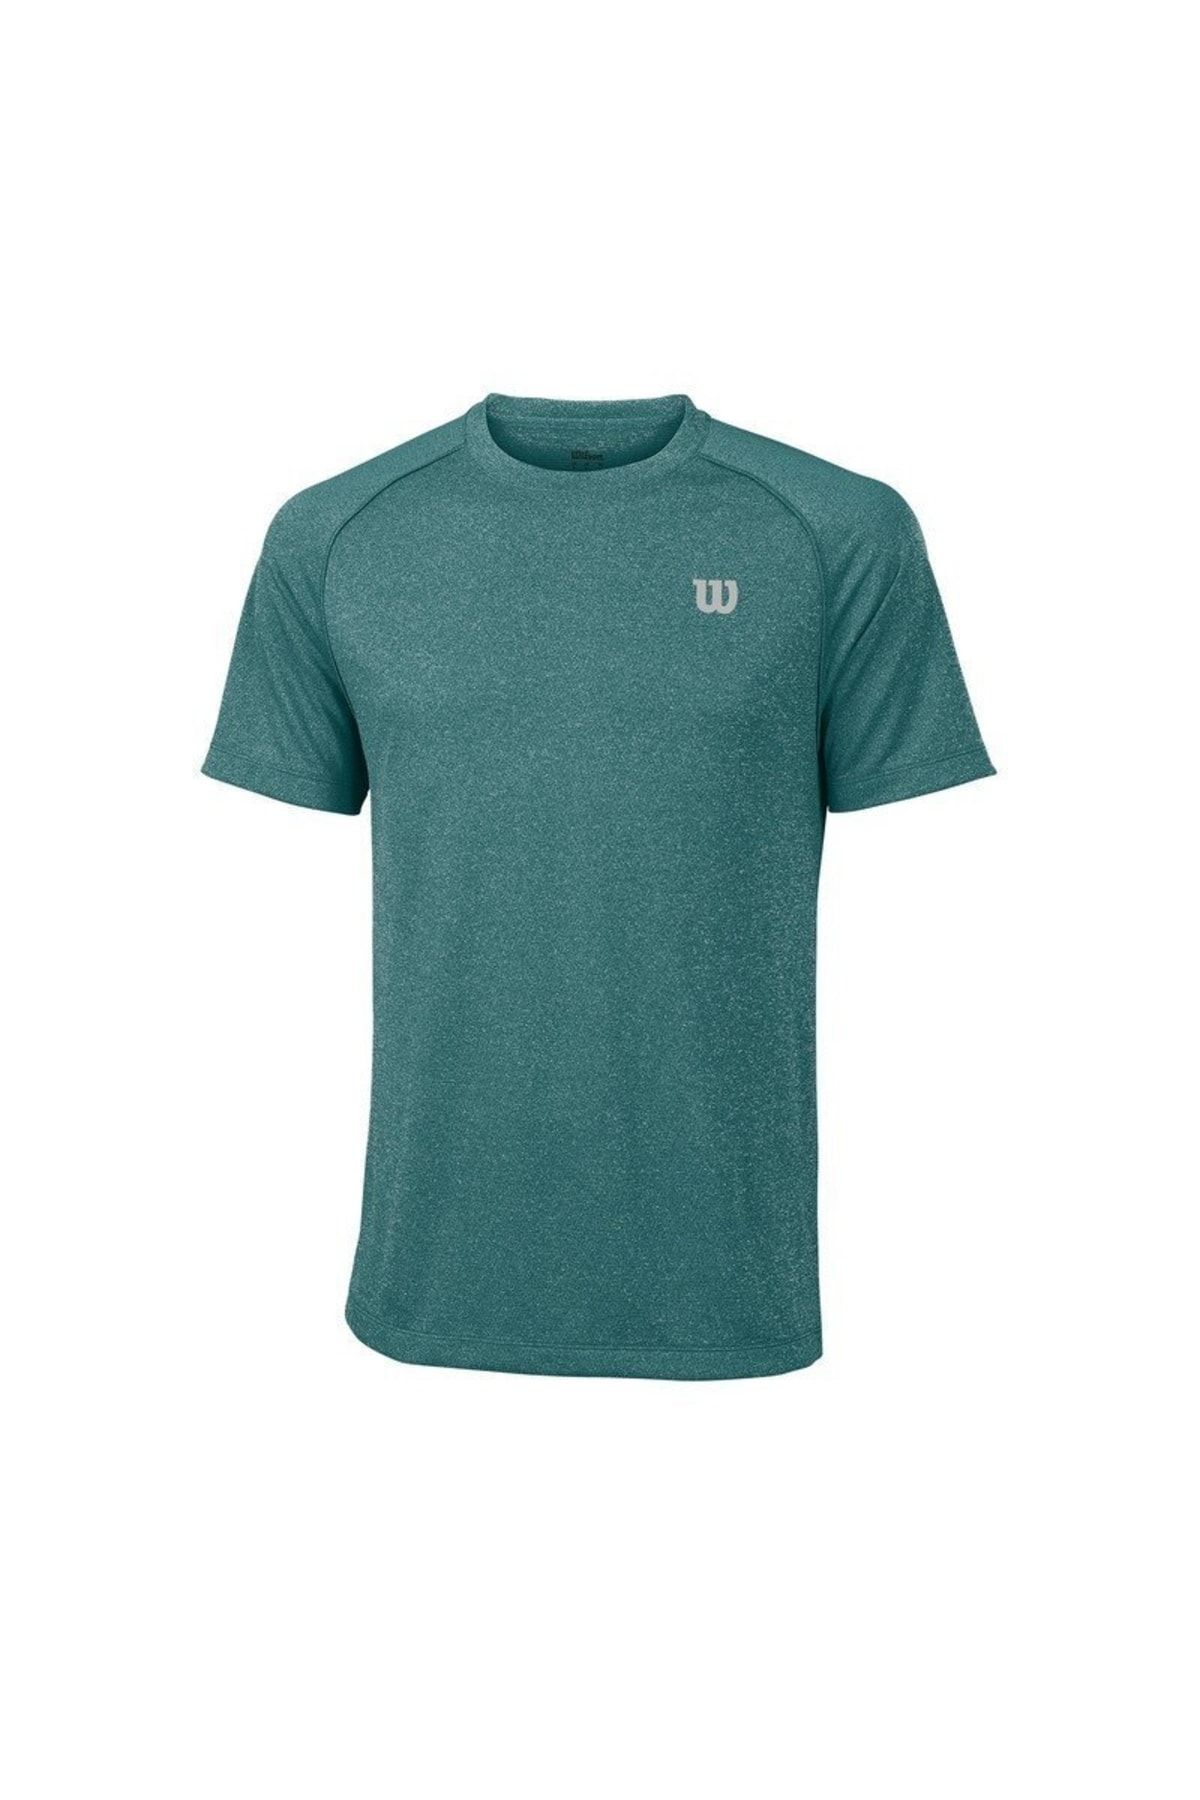 Wilson M Core Crew Yeşil Erkek T-shirt Wra746407